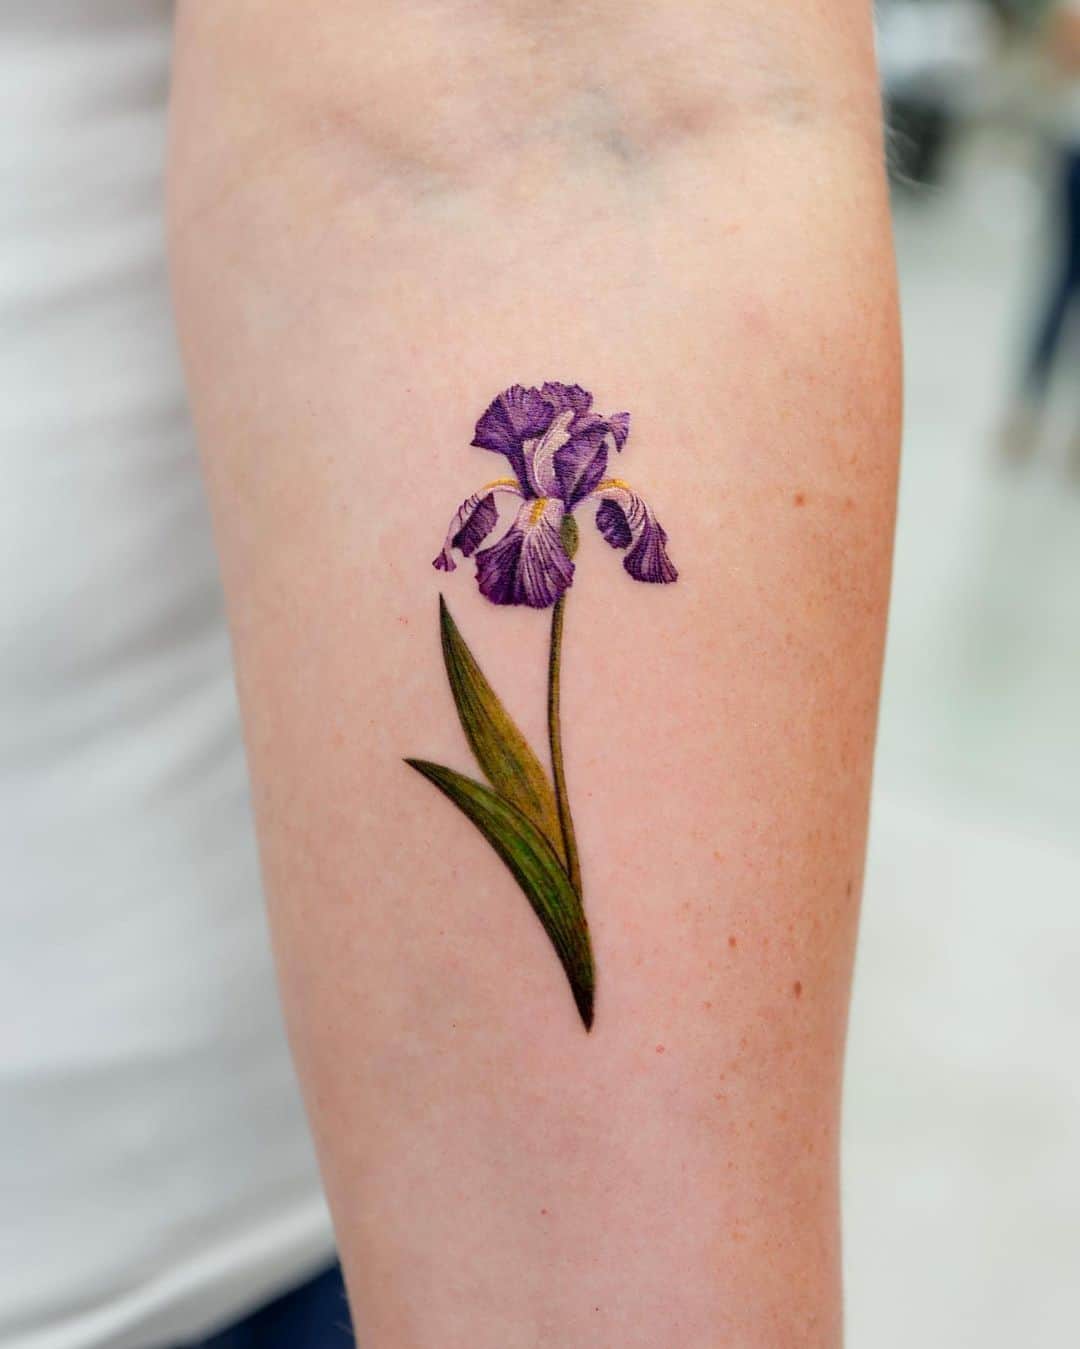 Minimalistic flower tattoo design by rony tattoo